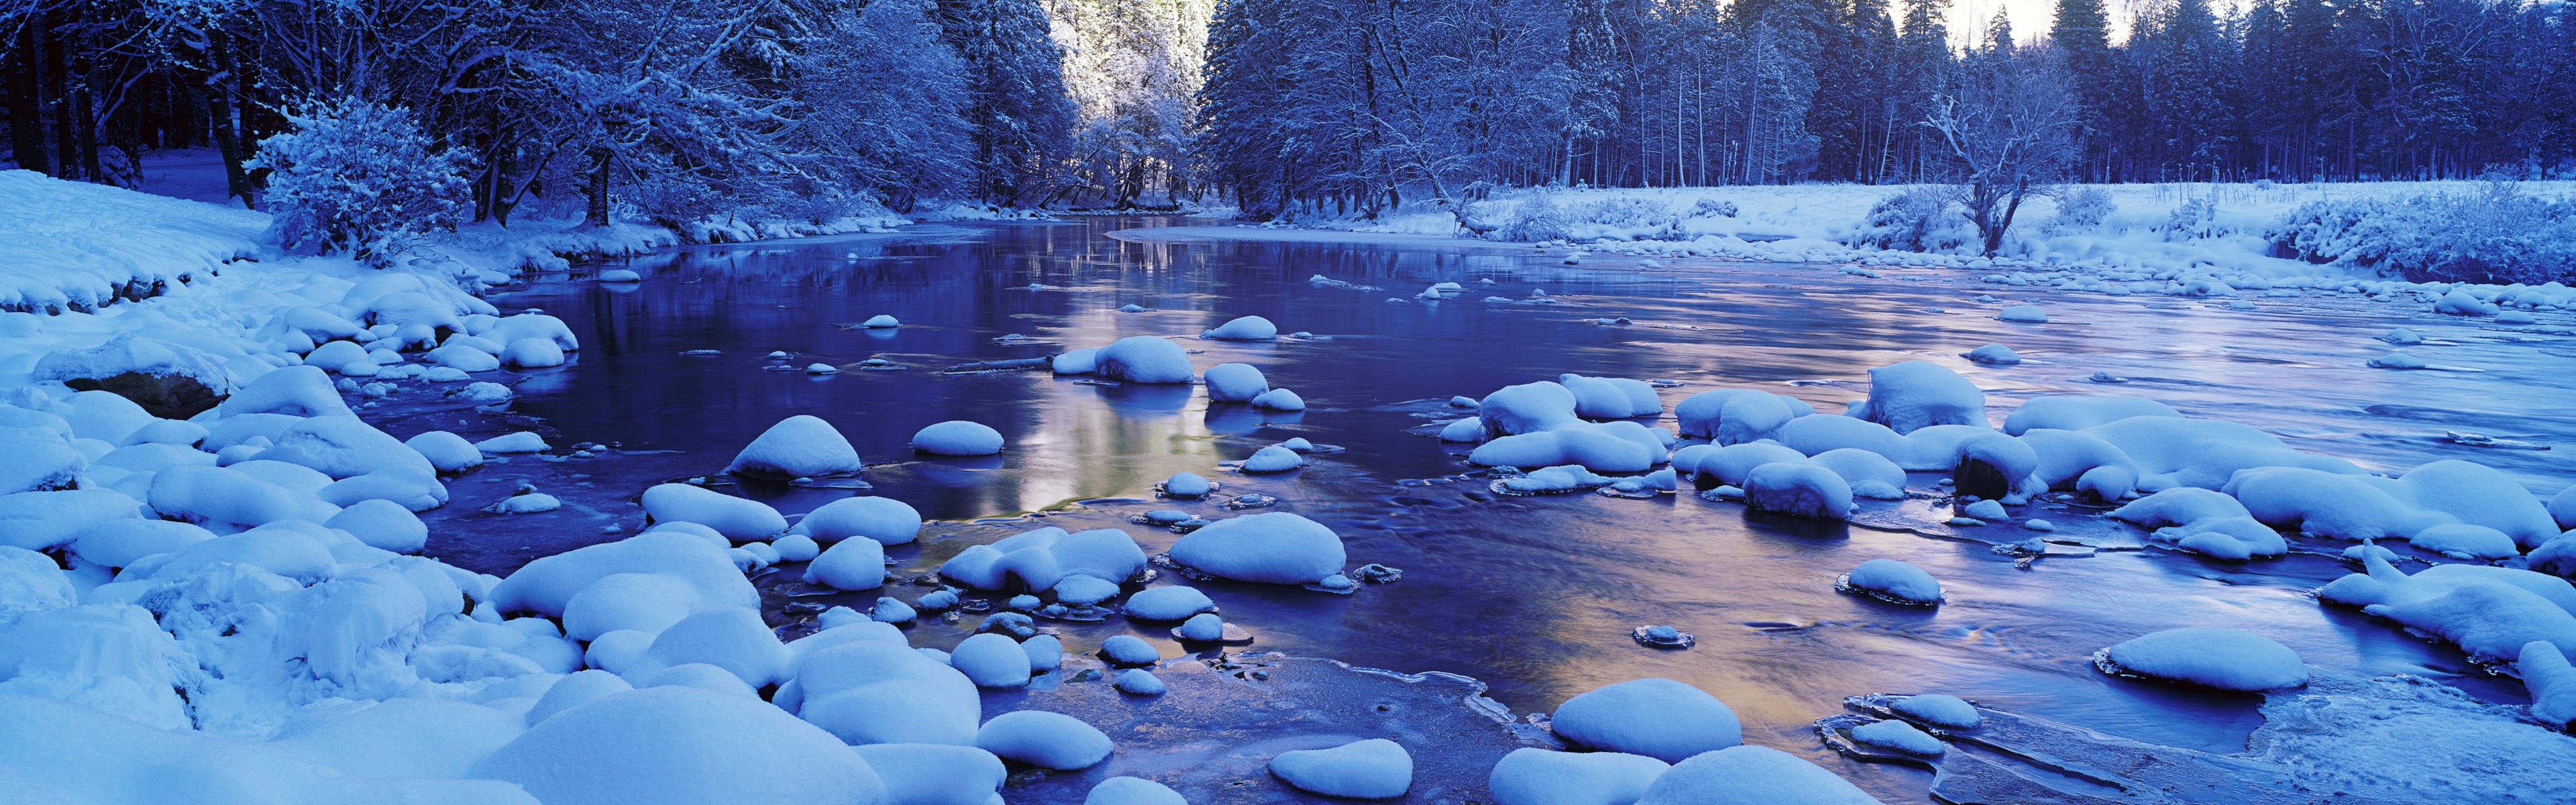 Красивая холодная зима снег, Windows 8 панорамные картинки на рабочий стол #3 - 3840x1200